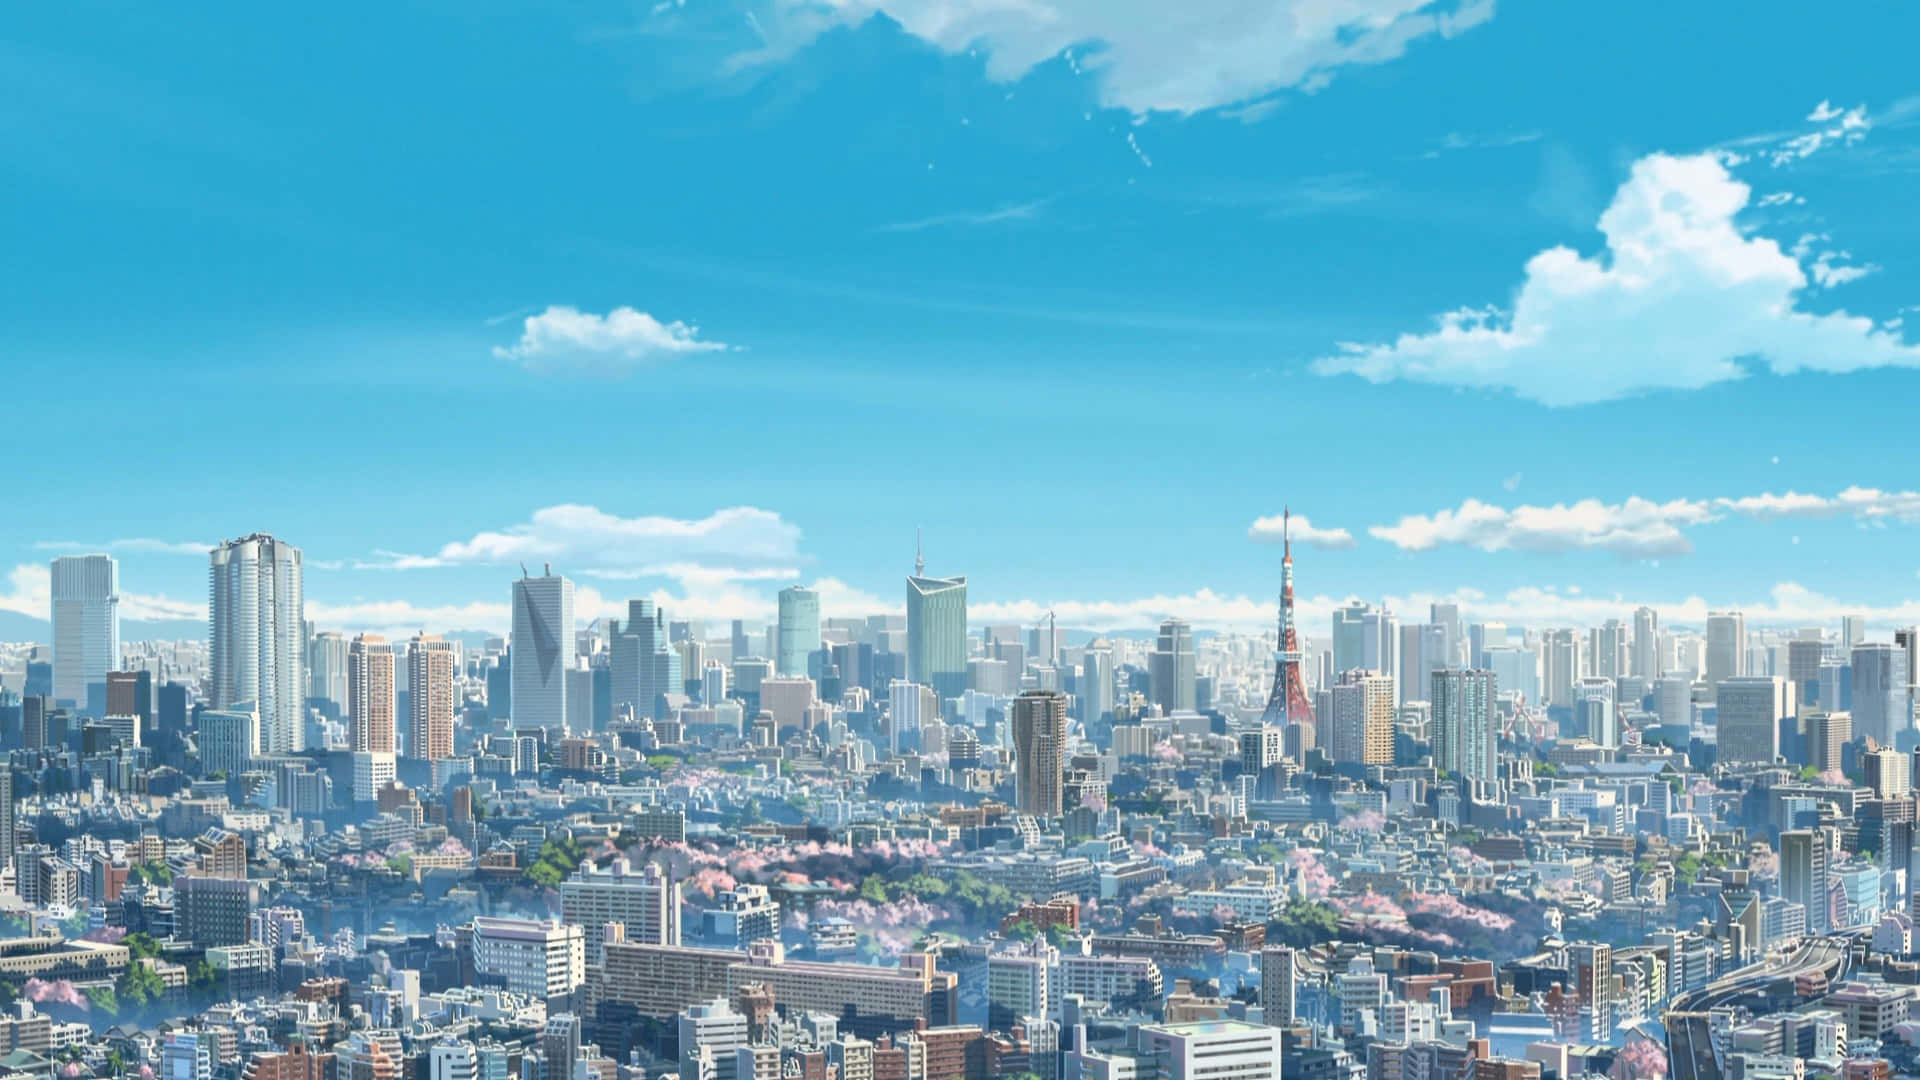 Förtrollningenoch Skönheten I Makoto Shinkais Animerade Konst.